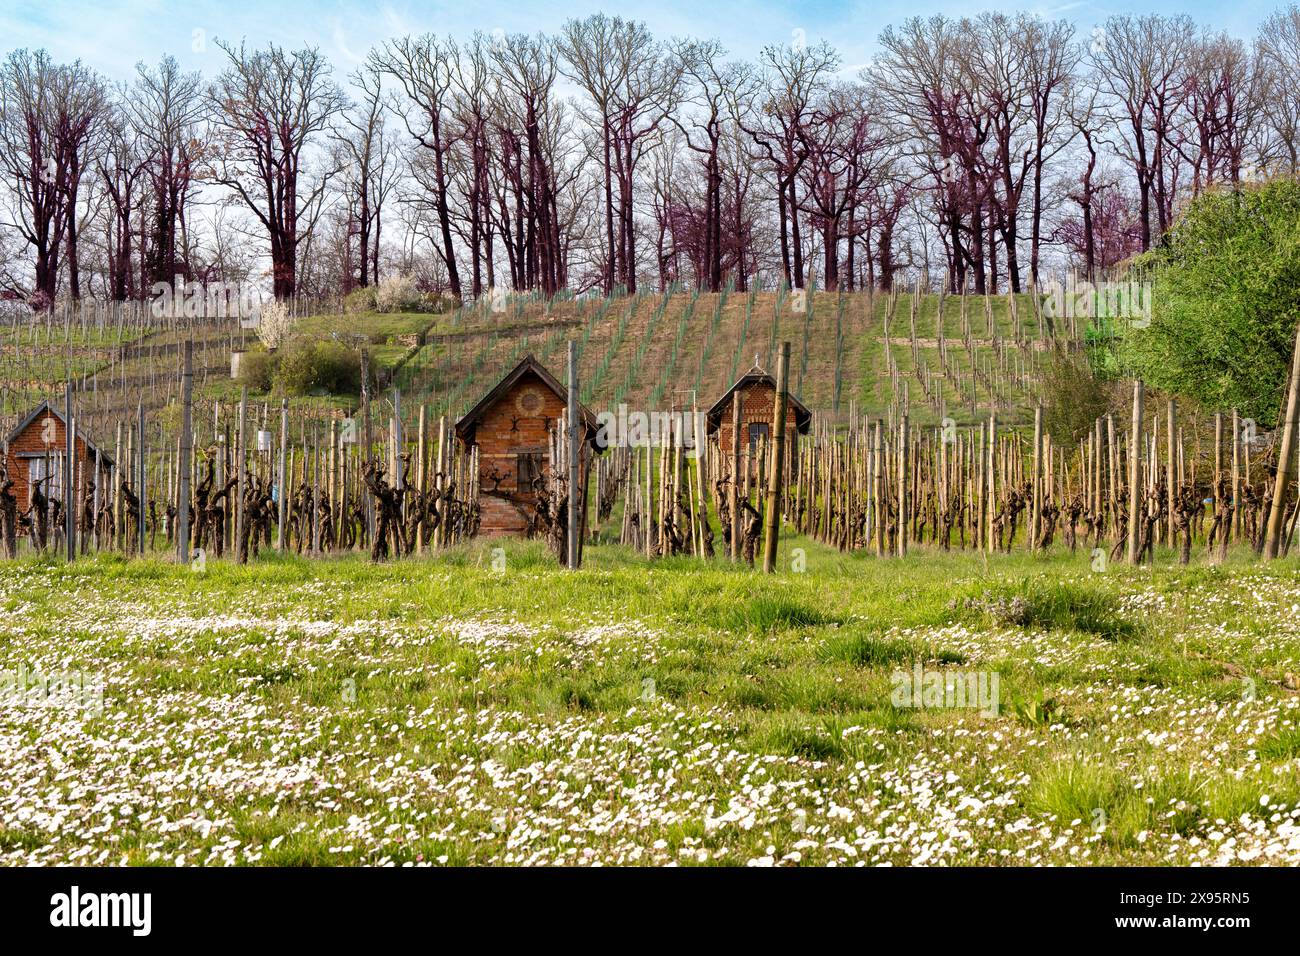 Frühlingsstimmung im Weinberg: Frisches Gras, Gänseblümchen, blühende Bäume und karge Weinstöcke. Stockfoto